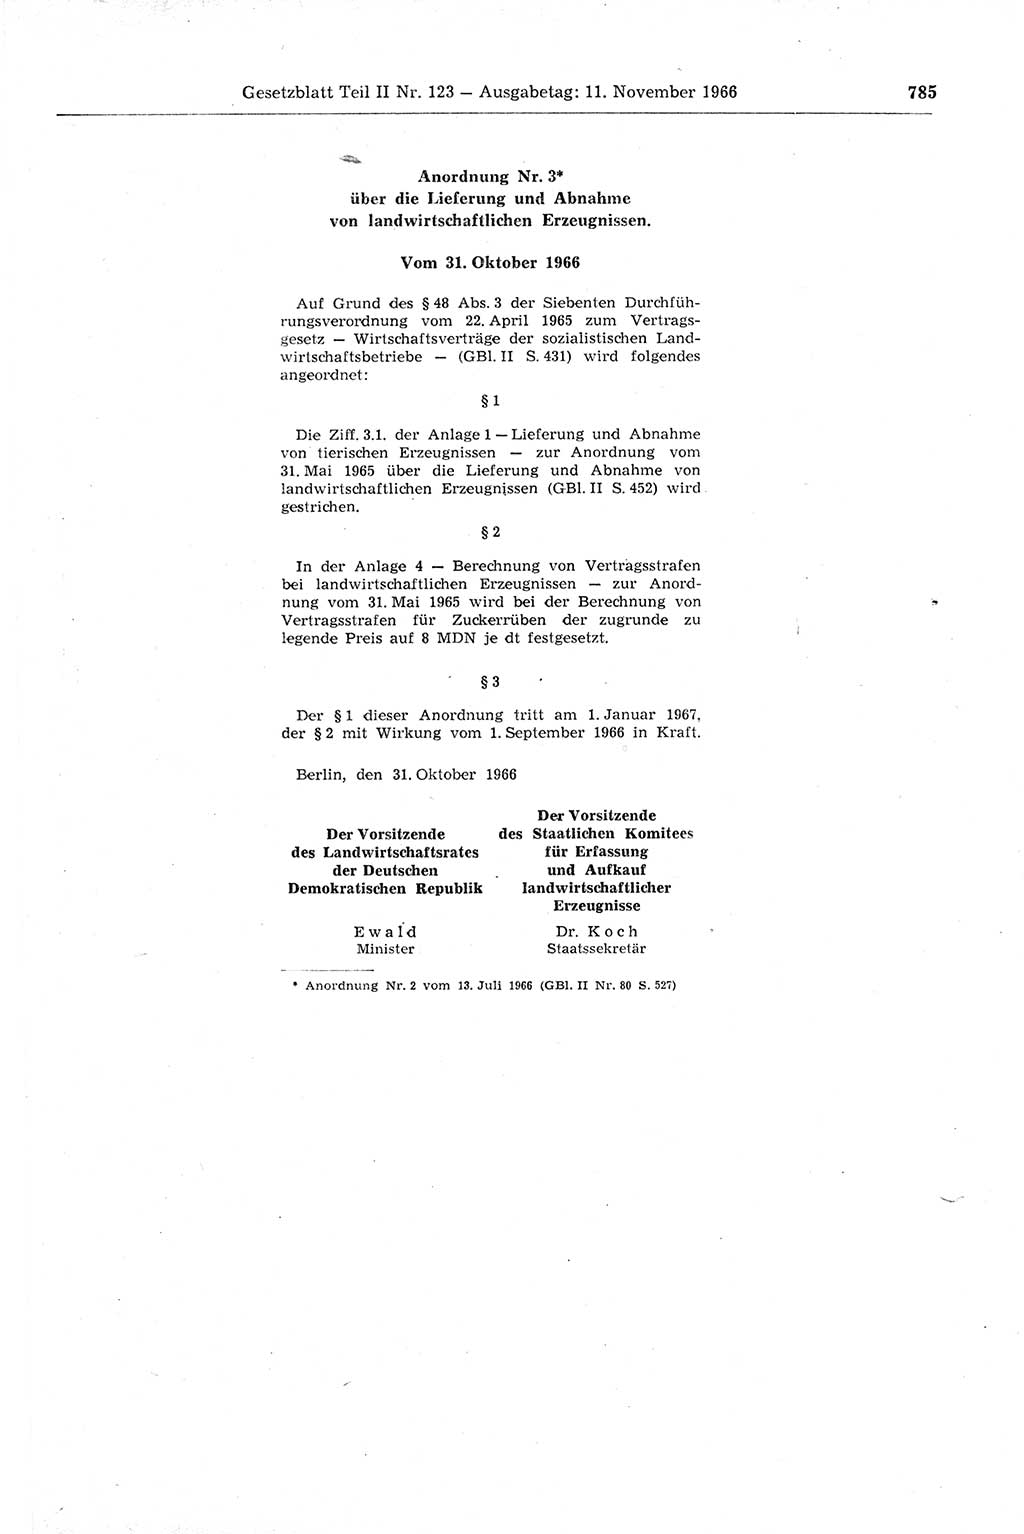 Gesetzblatt (GBl.) der Deutschen Demokratischen Republik (DDR) Teil ⅠⅠ 1966, Seite 785 (GBl. DDR ⅠⅠ 1966, S. 785)